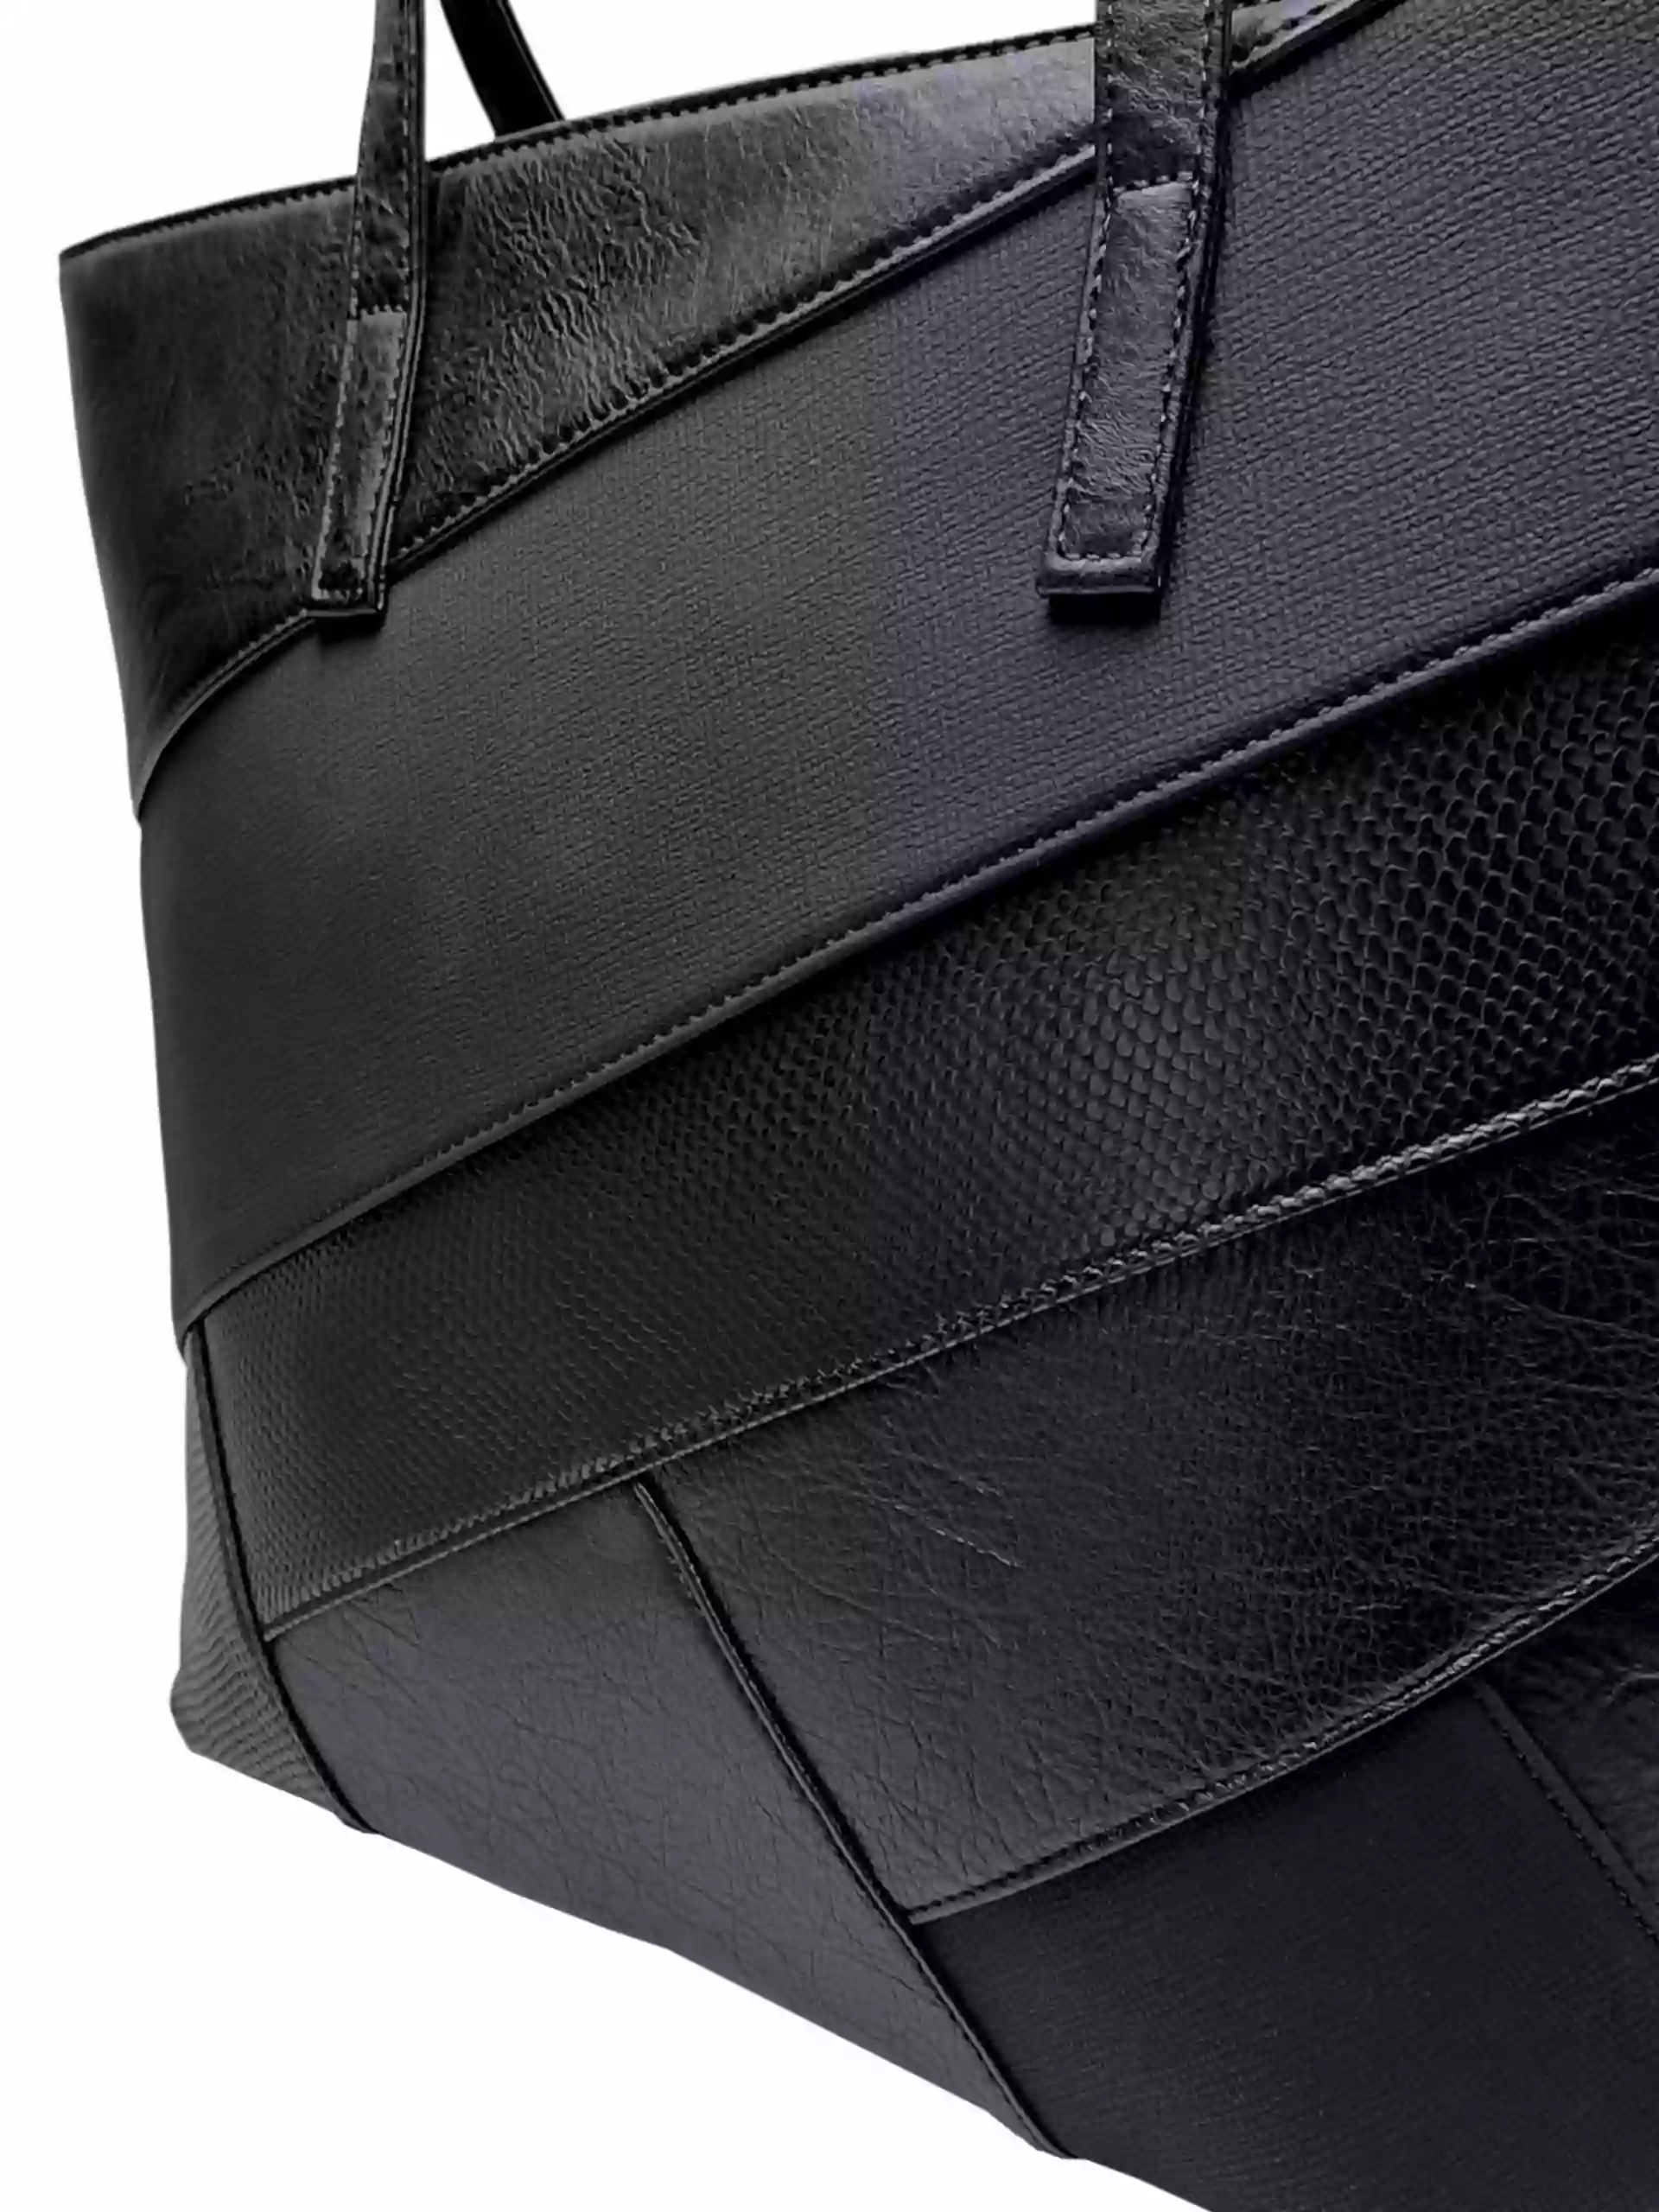 Černá kabelka přes rameno s šikmými vzory, Tapple, H190030, detail dámské kabelky přes rameno